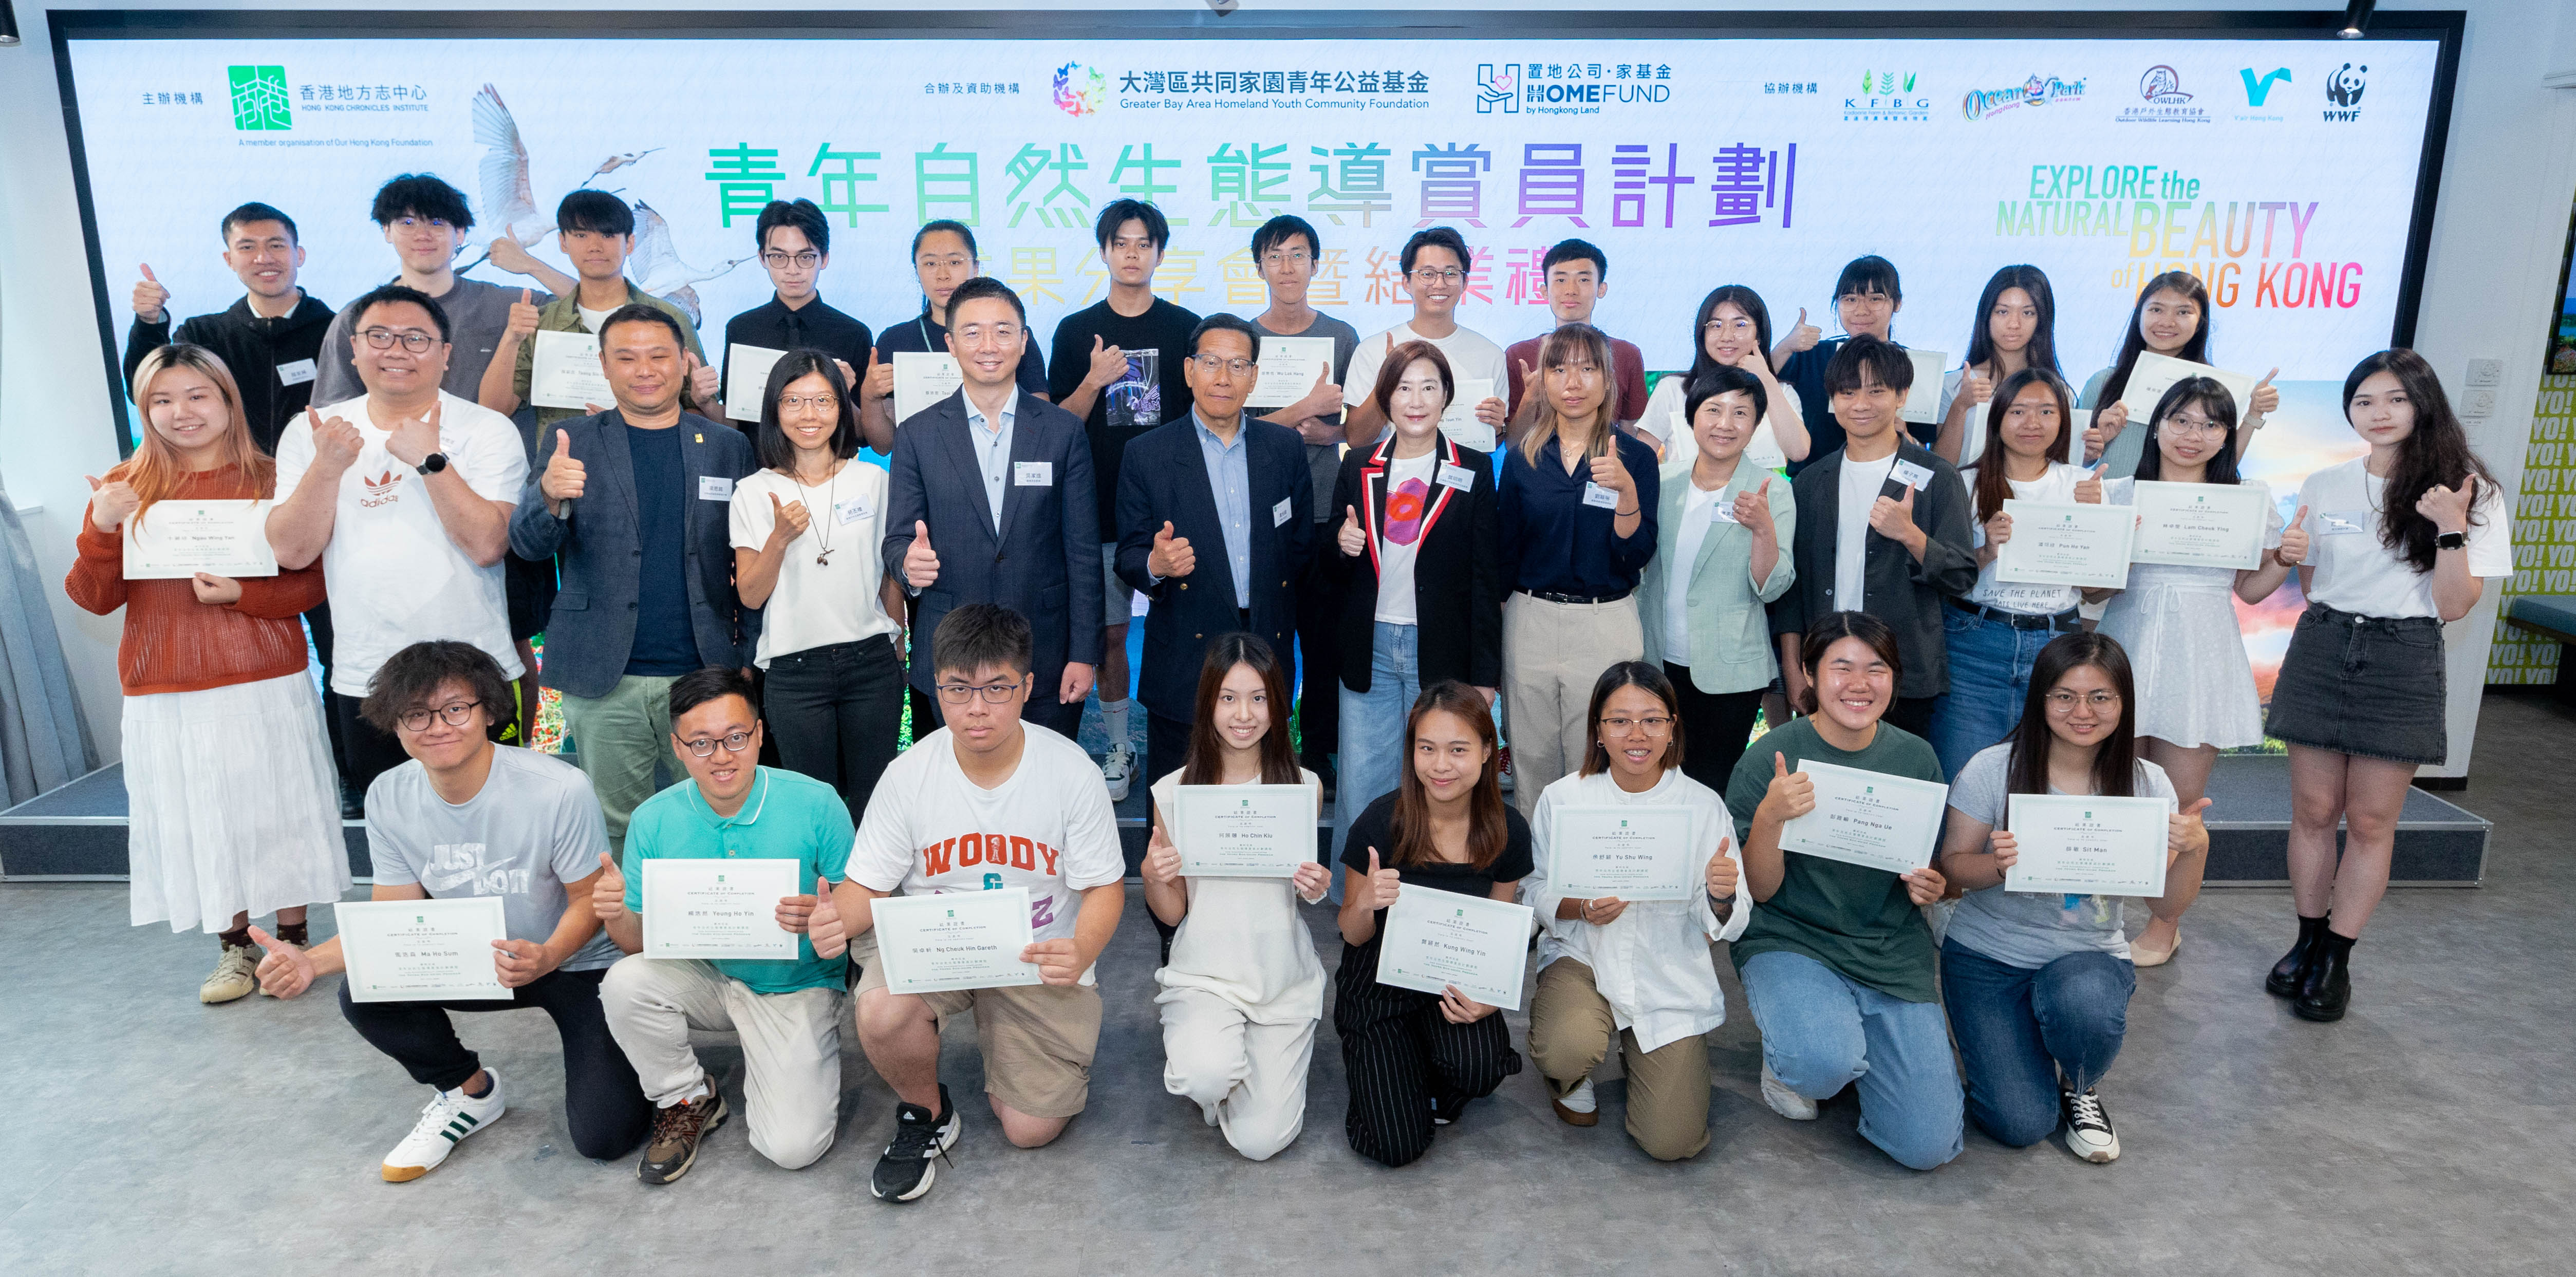 配合《香港志▪自然》出版 推出「青年自然生態導賞員計劃」 促進關注環保議題 讓青年增進對港認知及發揮就業潛能